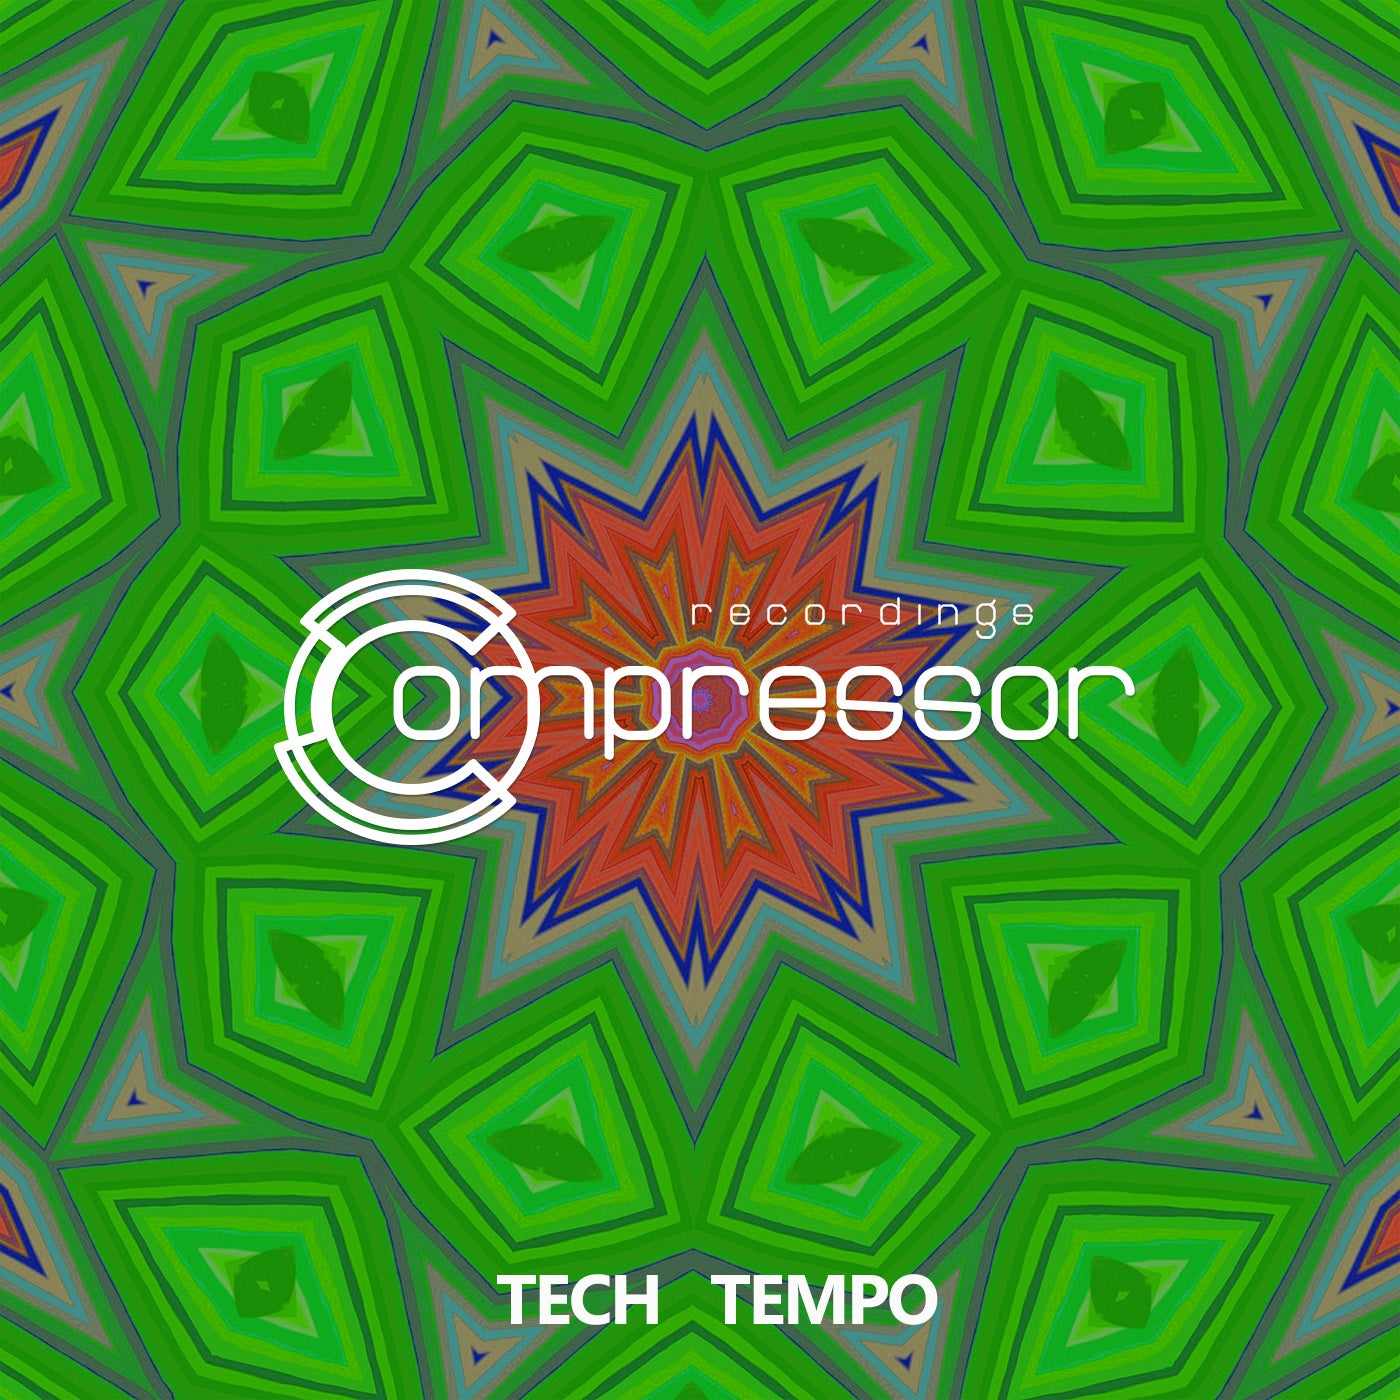 Tech Tempo